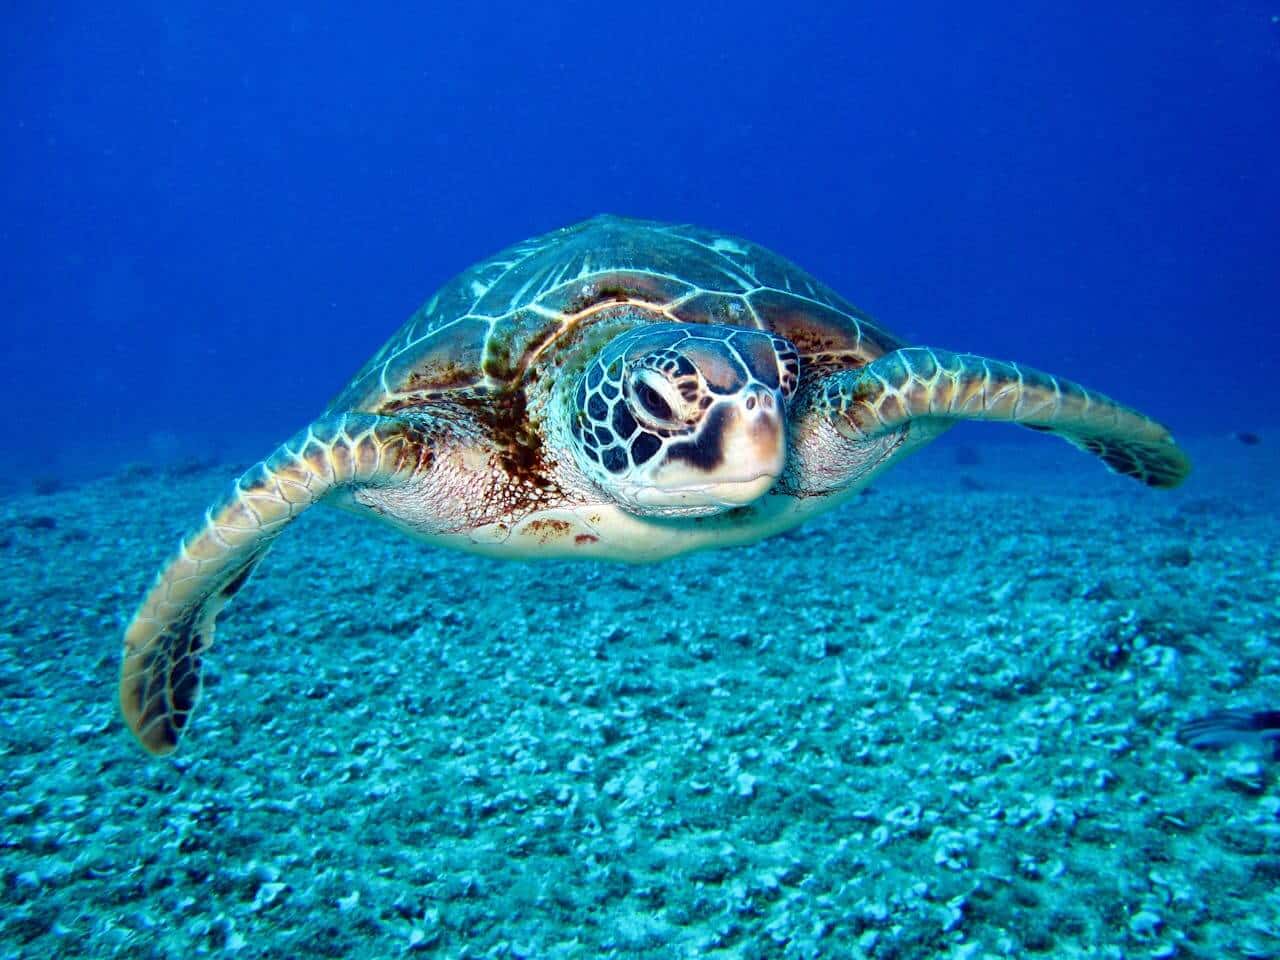 Una tartaruga che nuota nel mare. Fotografo Richard Segal.